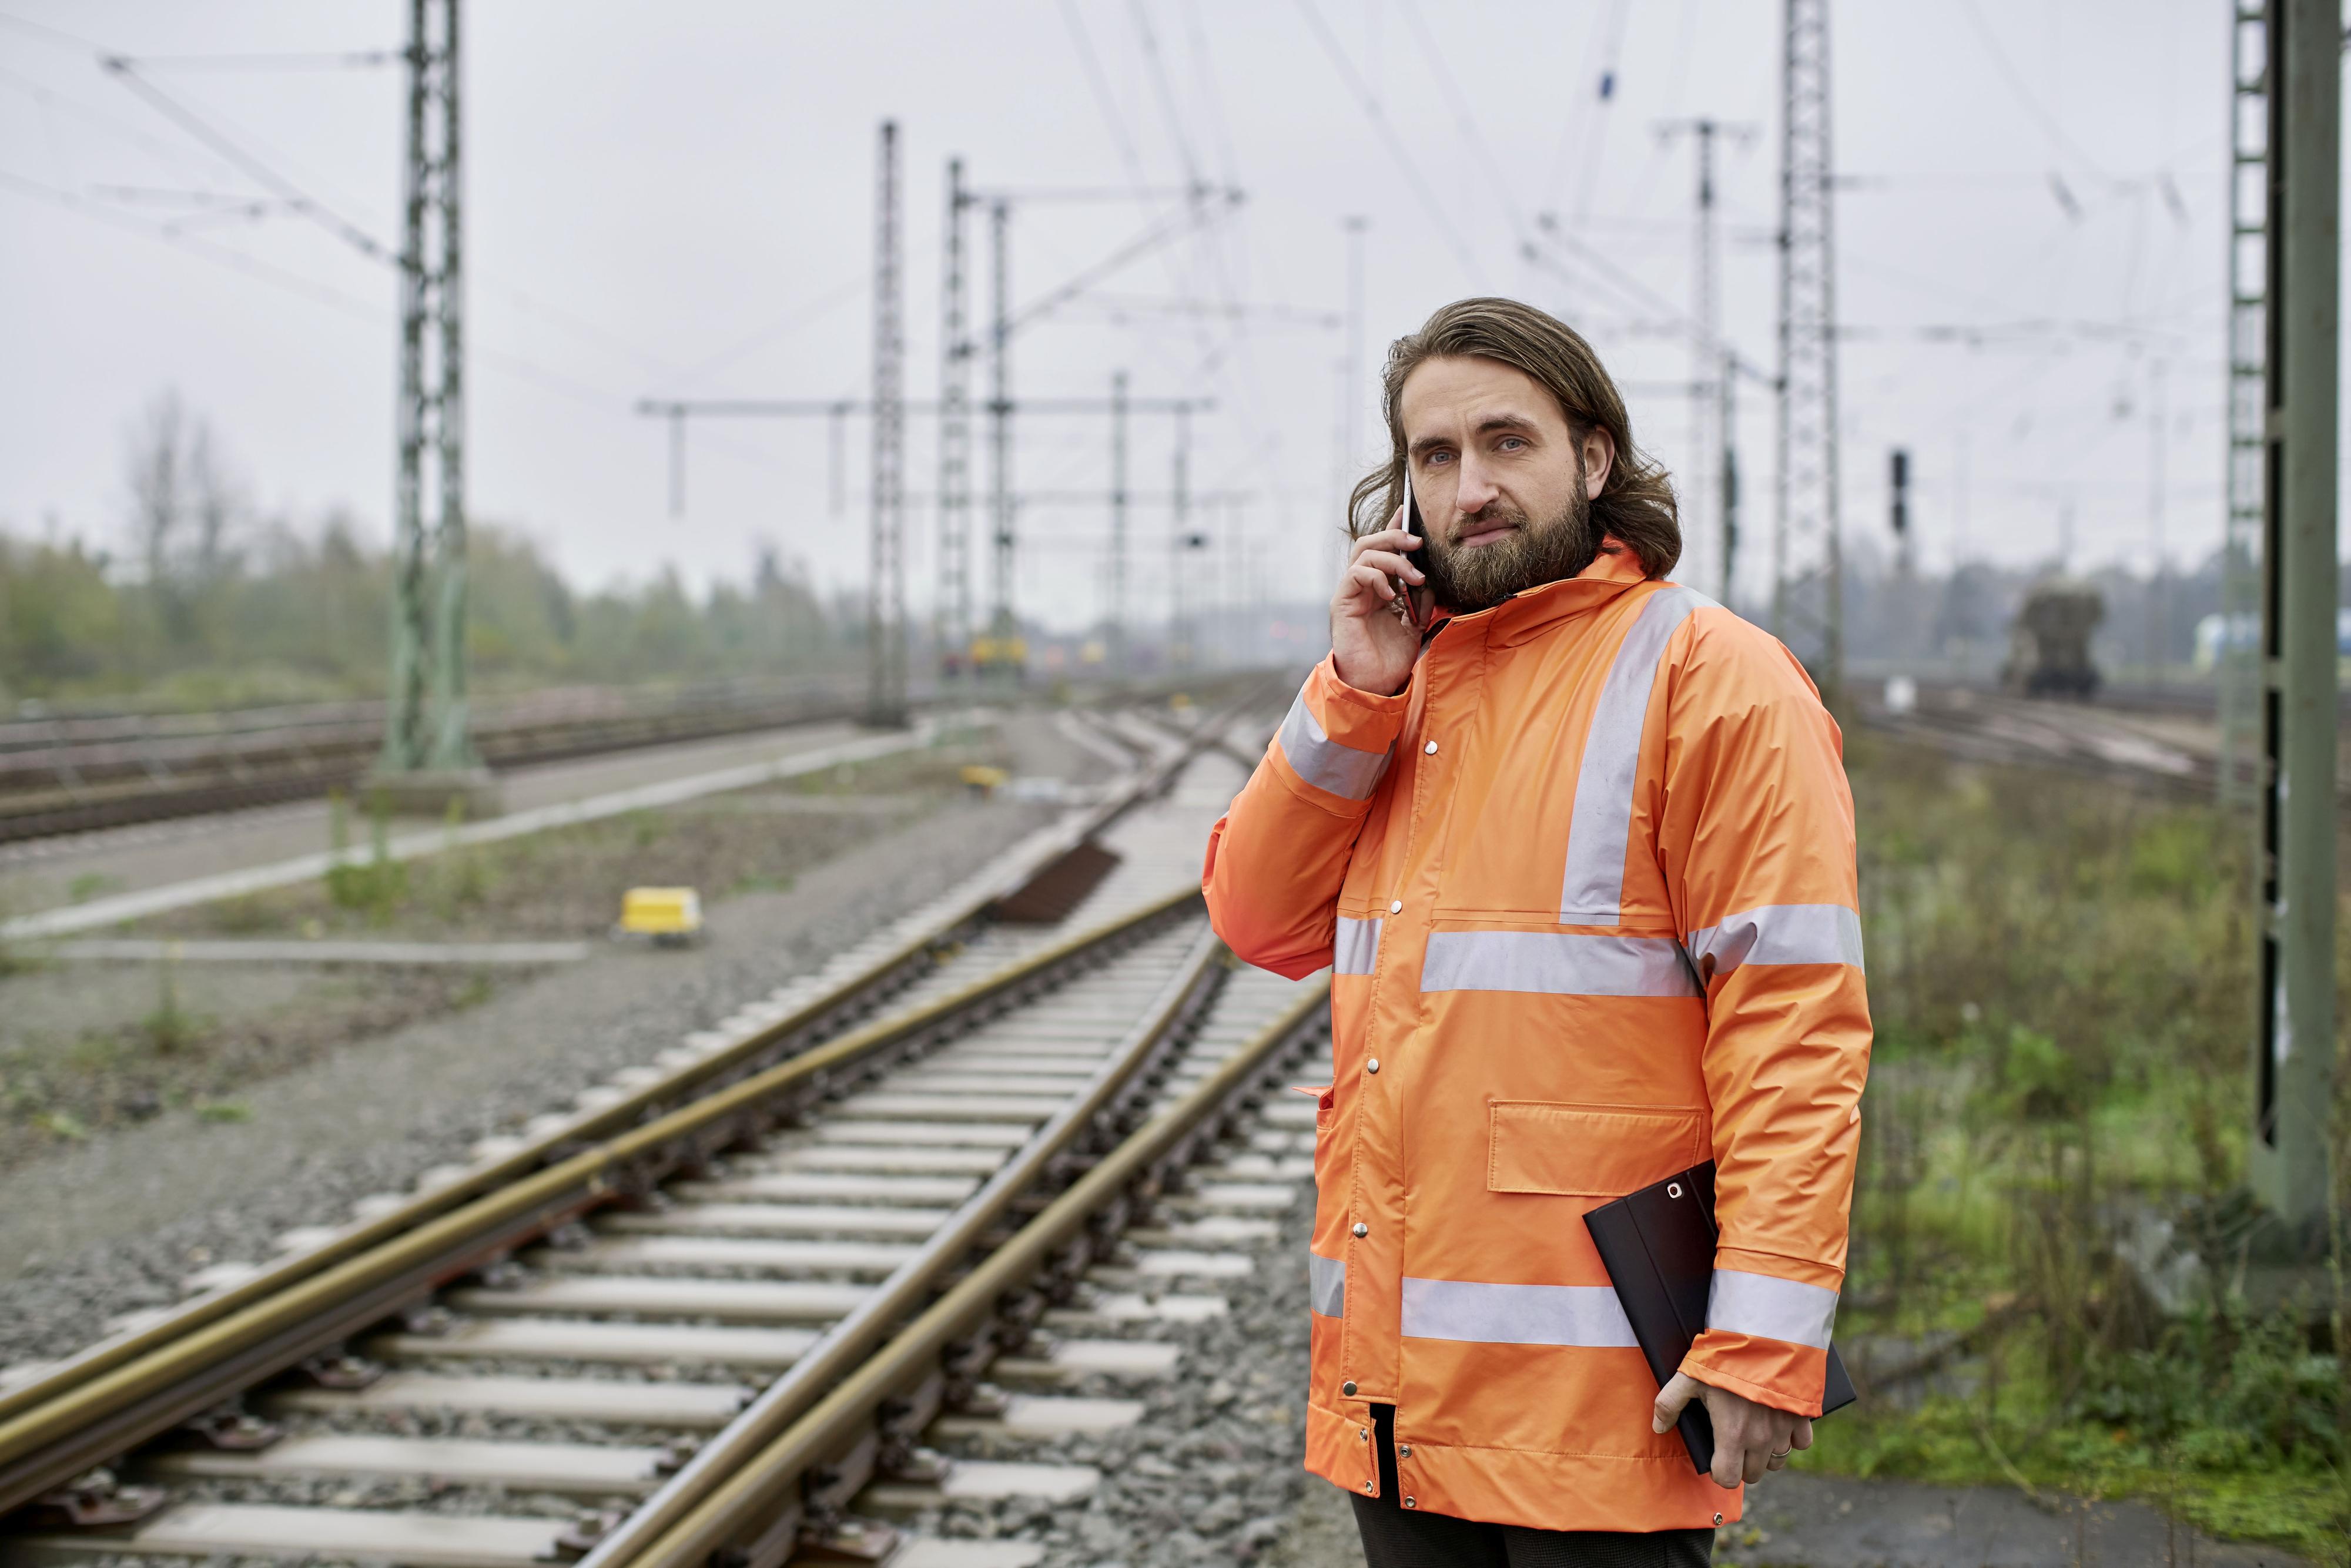 Elektroingenieur Samuel arbeitet bei der Deutschen Bahn. Er steht mit Sicherheitsweste am Gleis und telefoniert.